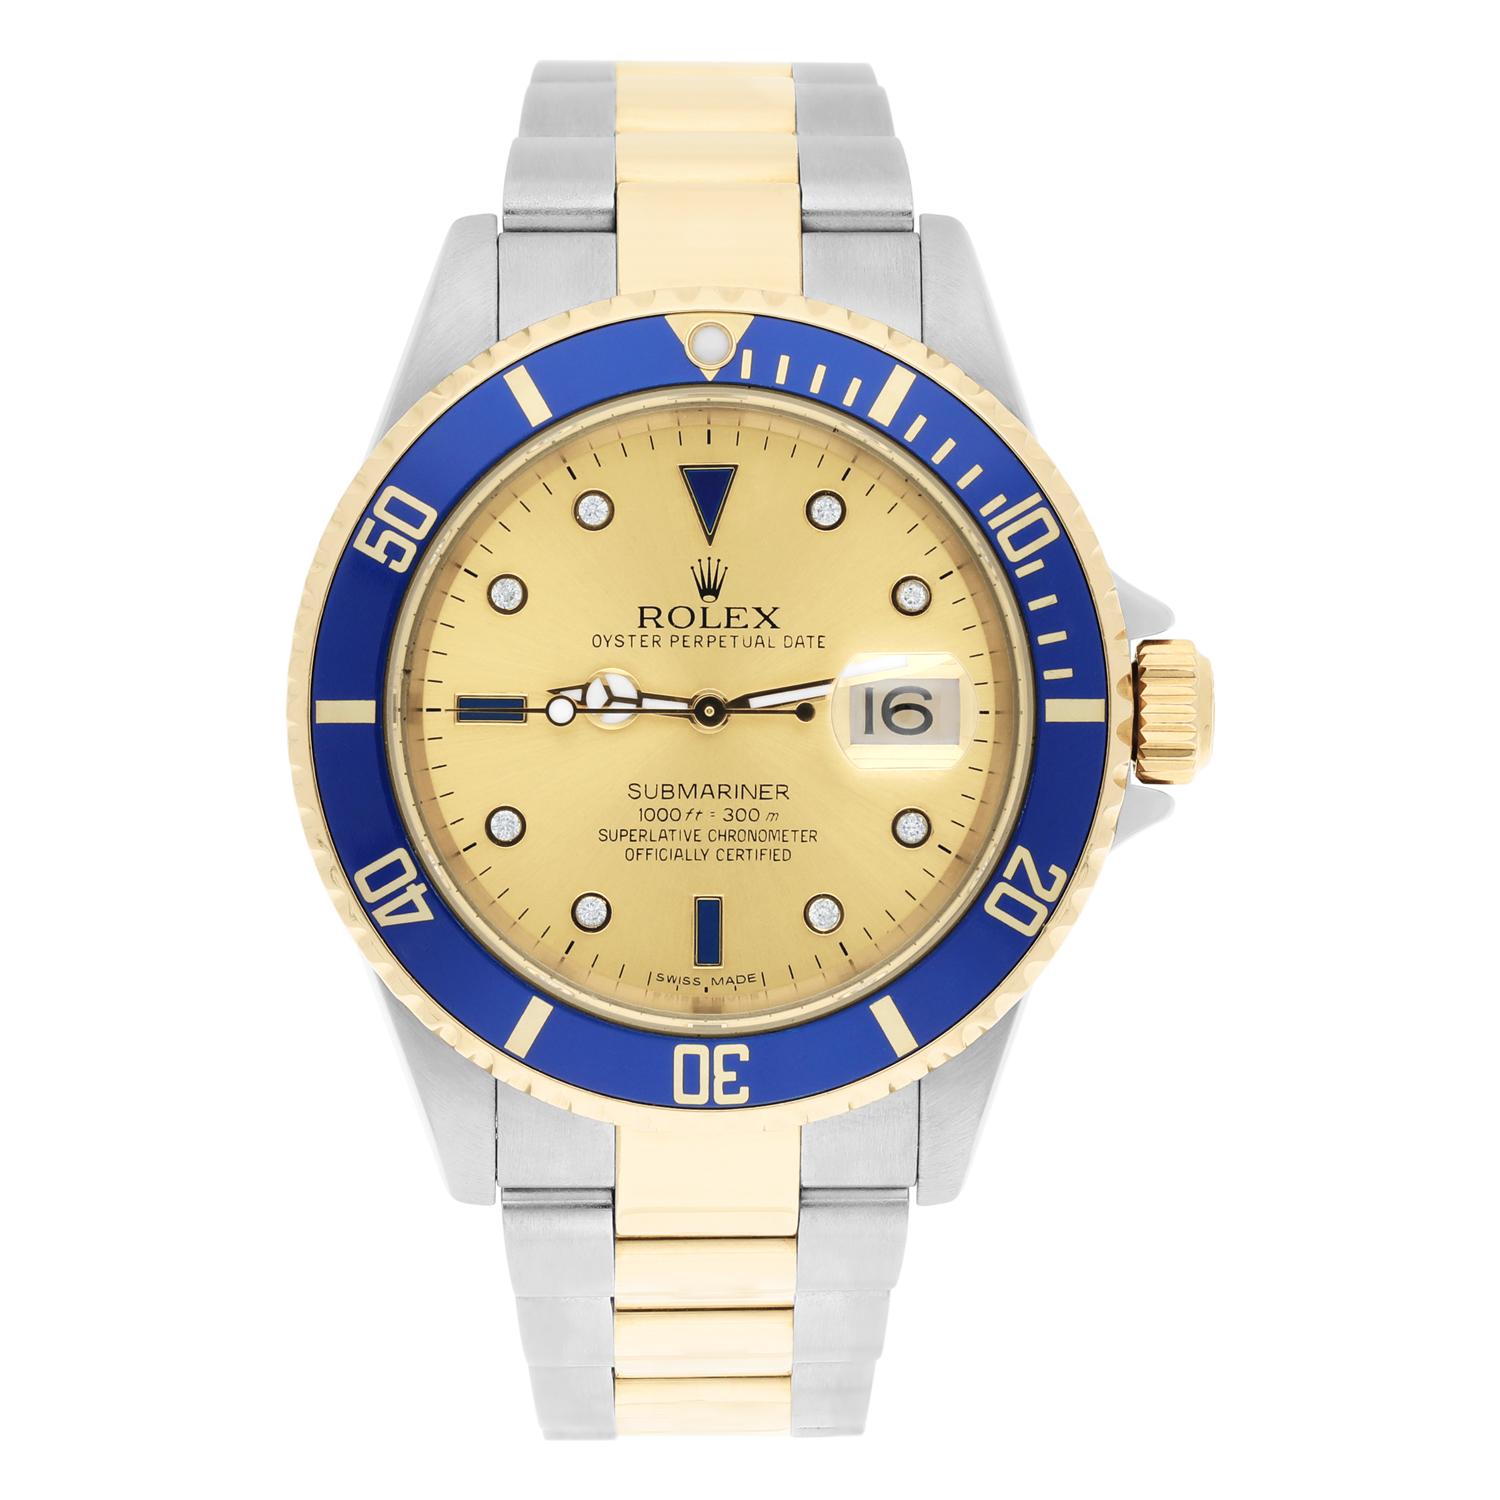 Diese Rolex Submariner Uhr ist ein wahrer Luxusartikel für jeden Mann. Mit einem mehrfarbigen Armband aus 18 Karat Gelbgold und Edelstahl und einem Gehäuse aus 18 Karat Gelbgold und Edelstahl strahlt diese Uhr Klasse und Stil aus. Das